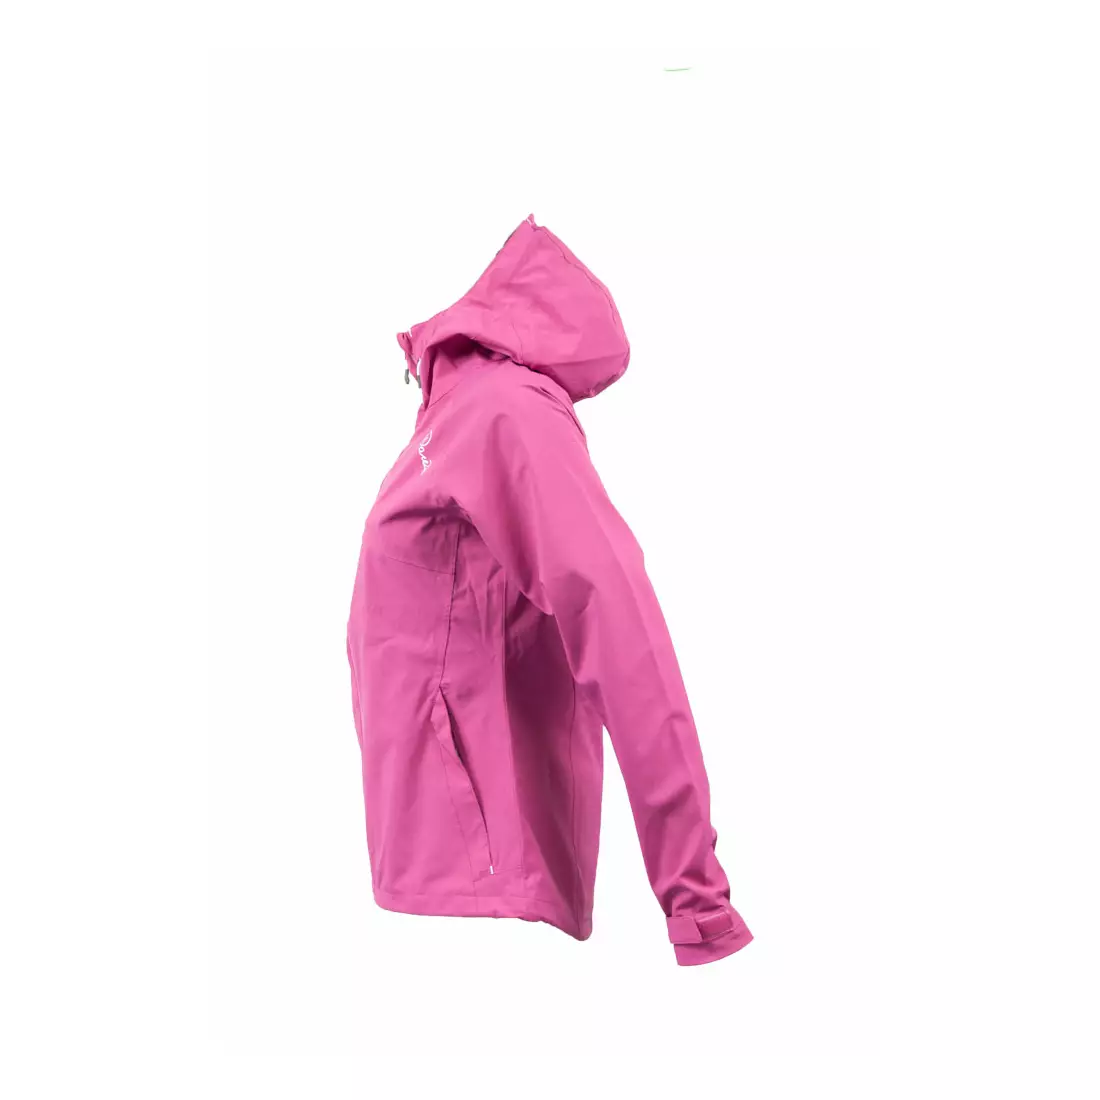 DARE2B dámská bunda do deště PAVILLION DWW102-6N5, barva: růžová